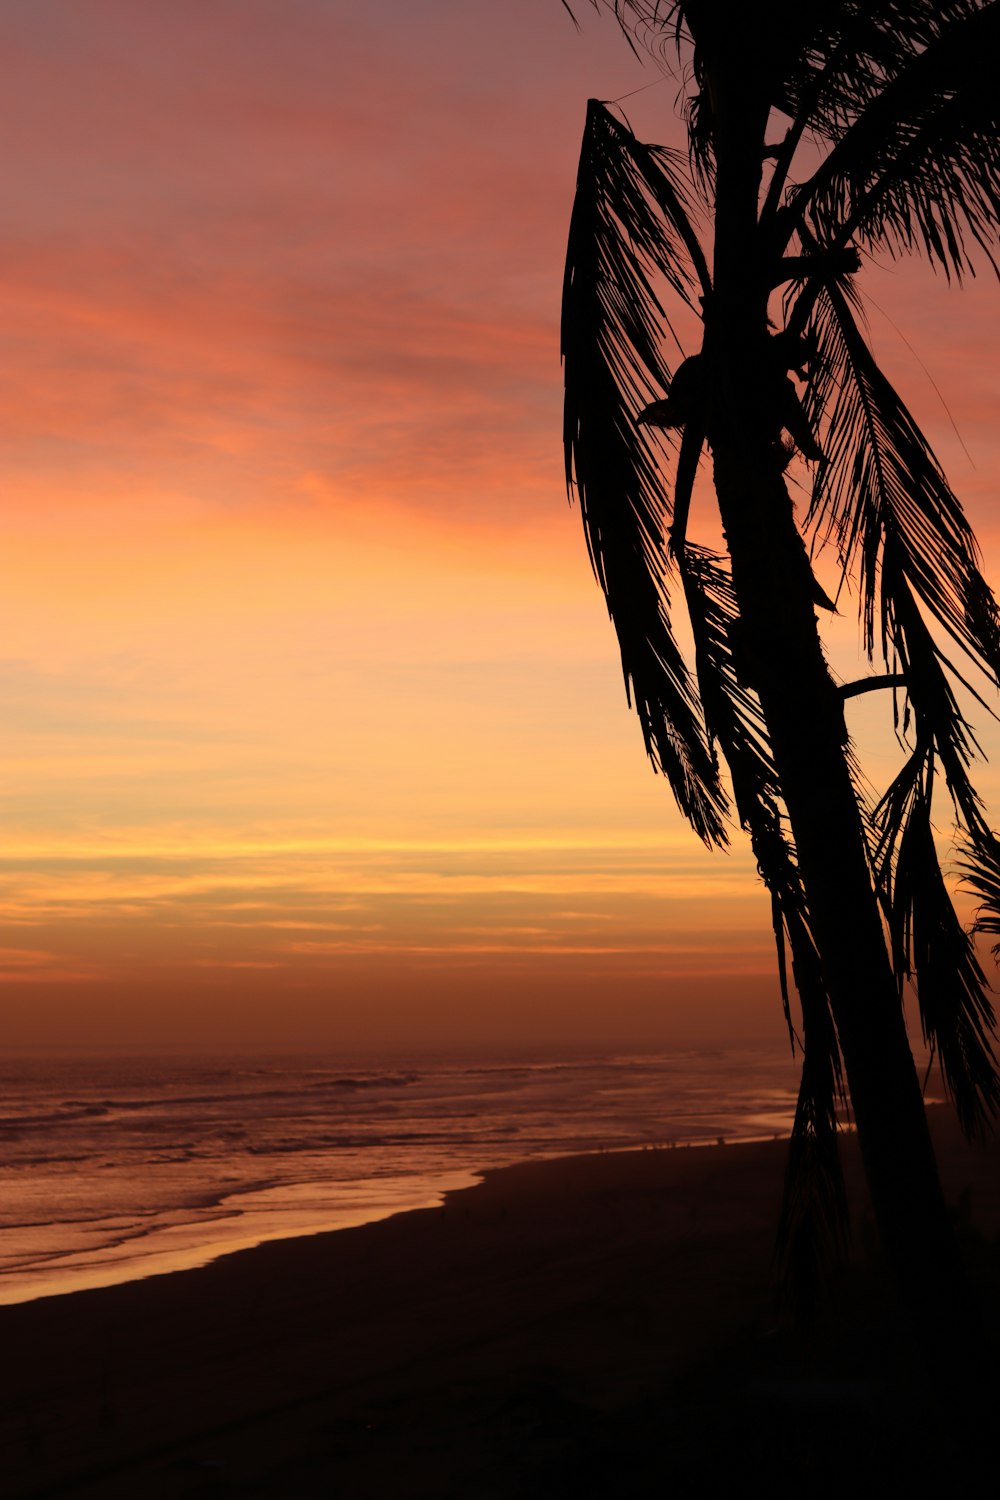 Un palmier sur la plage au coucher du soleil